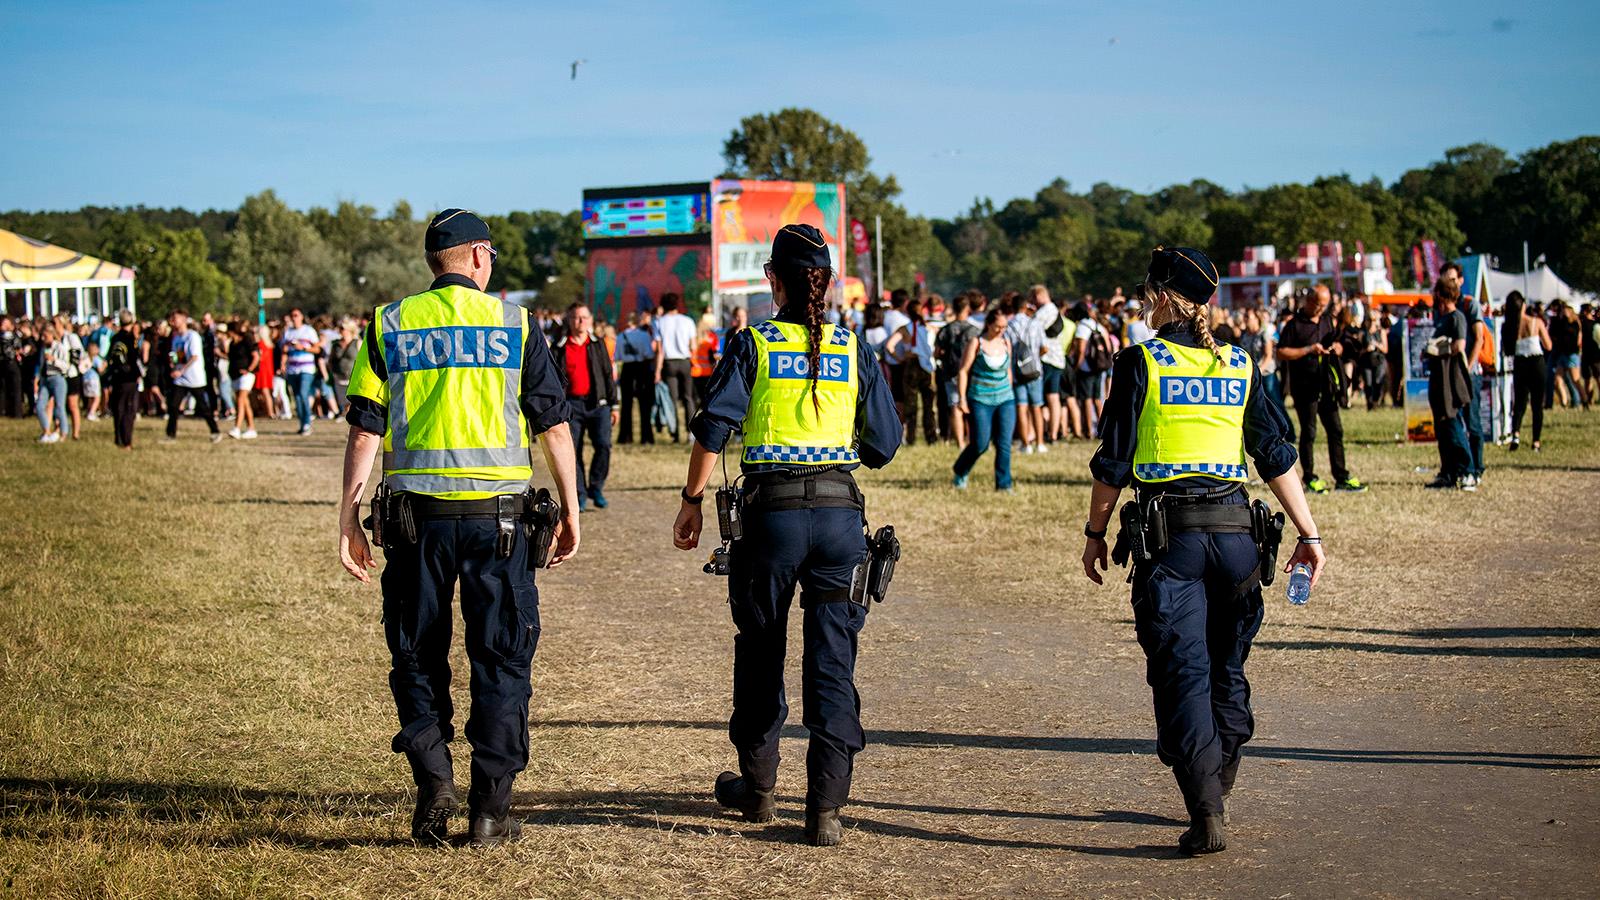 Polis på patrull i festivalområdet på Gärdet i Stockholm i helgen.